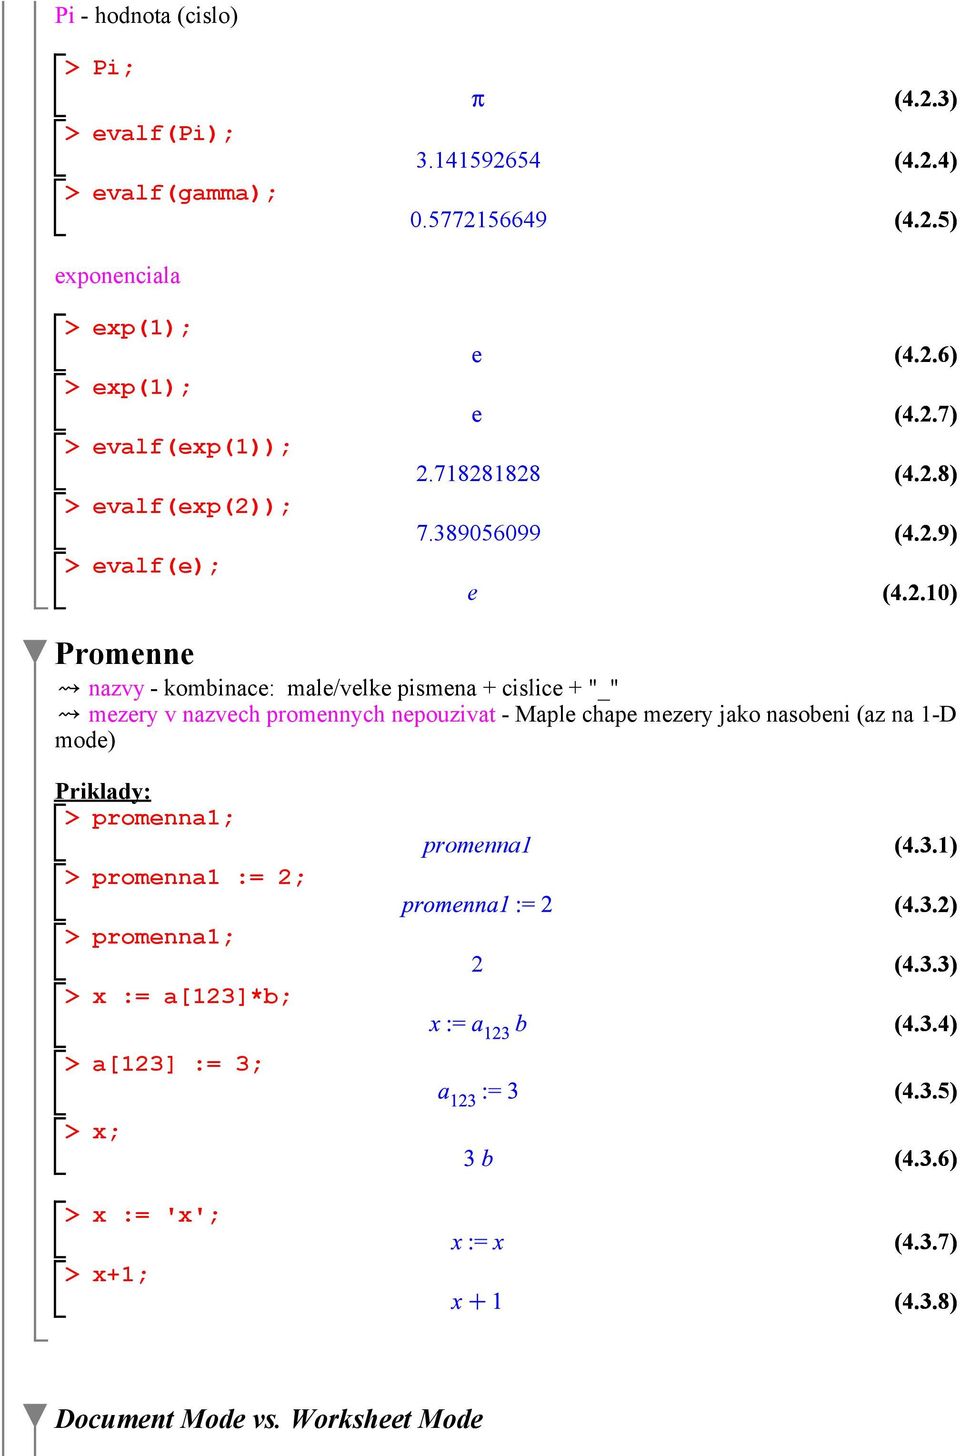 promennych nepouzivat - Maple chape mezery jako nasobeni (az na 1-D mode) Priklady: promenna1; promenna1 := 2; promenna1; x := a[123]*b; a[123] :=